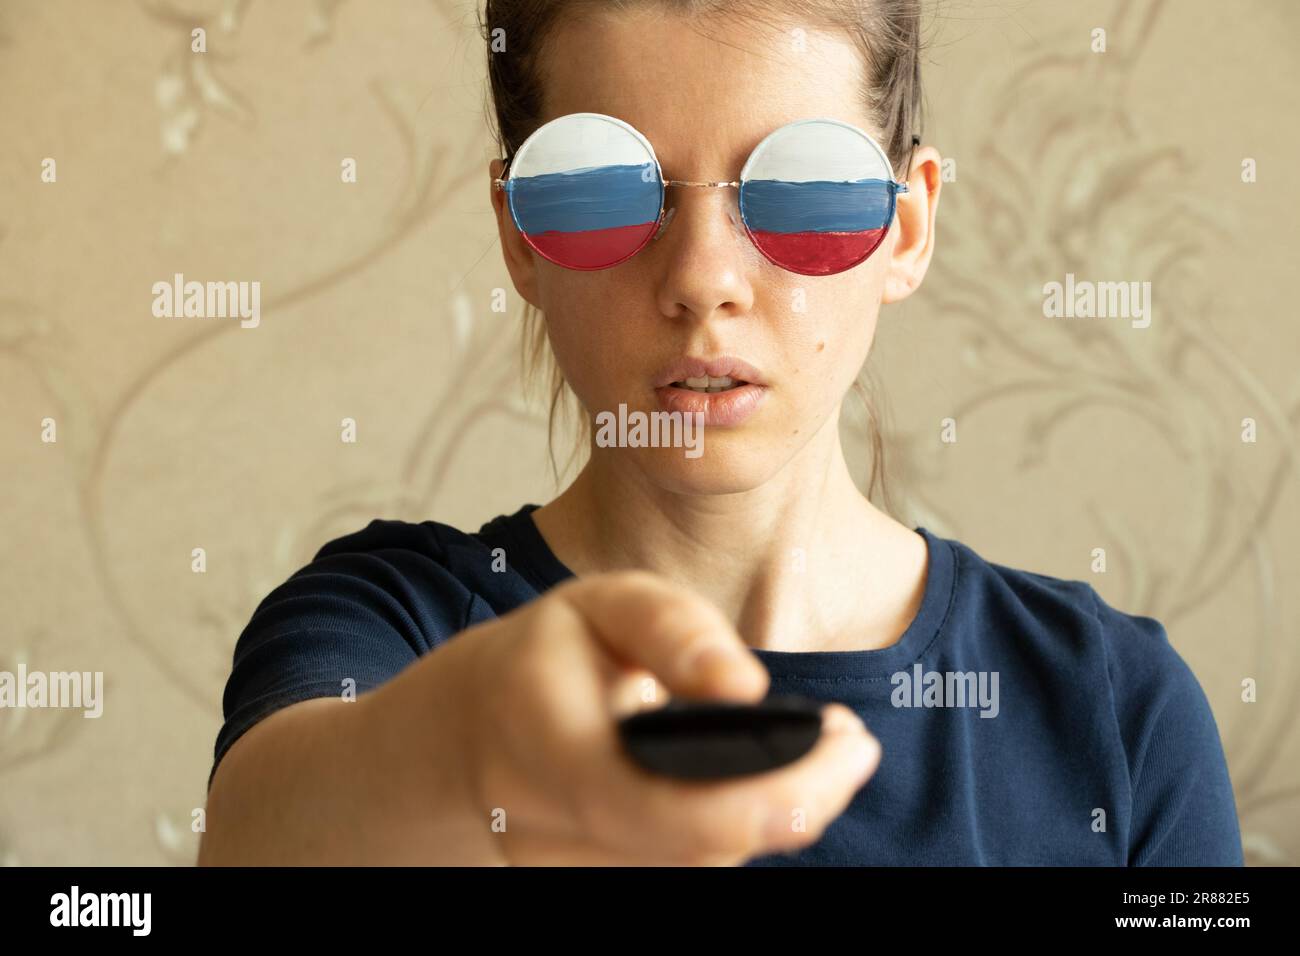 La bandiera della Russia sugli occhiali della ragazza e nelle mani del telecomando dalla TV, la Russia e la propaganda dalla TV, bugie e inganni Foto Stock